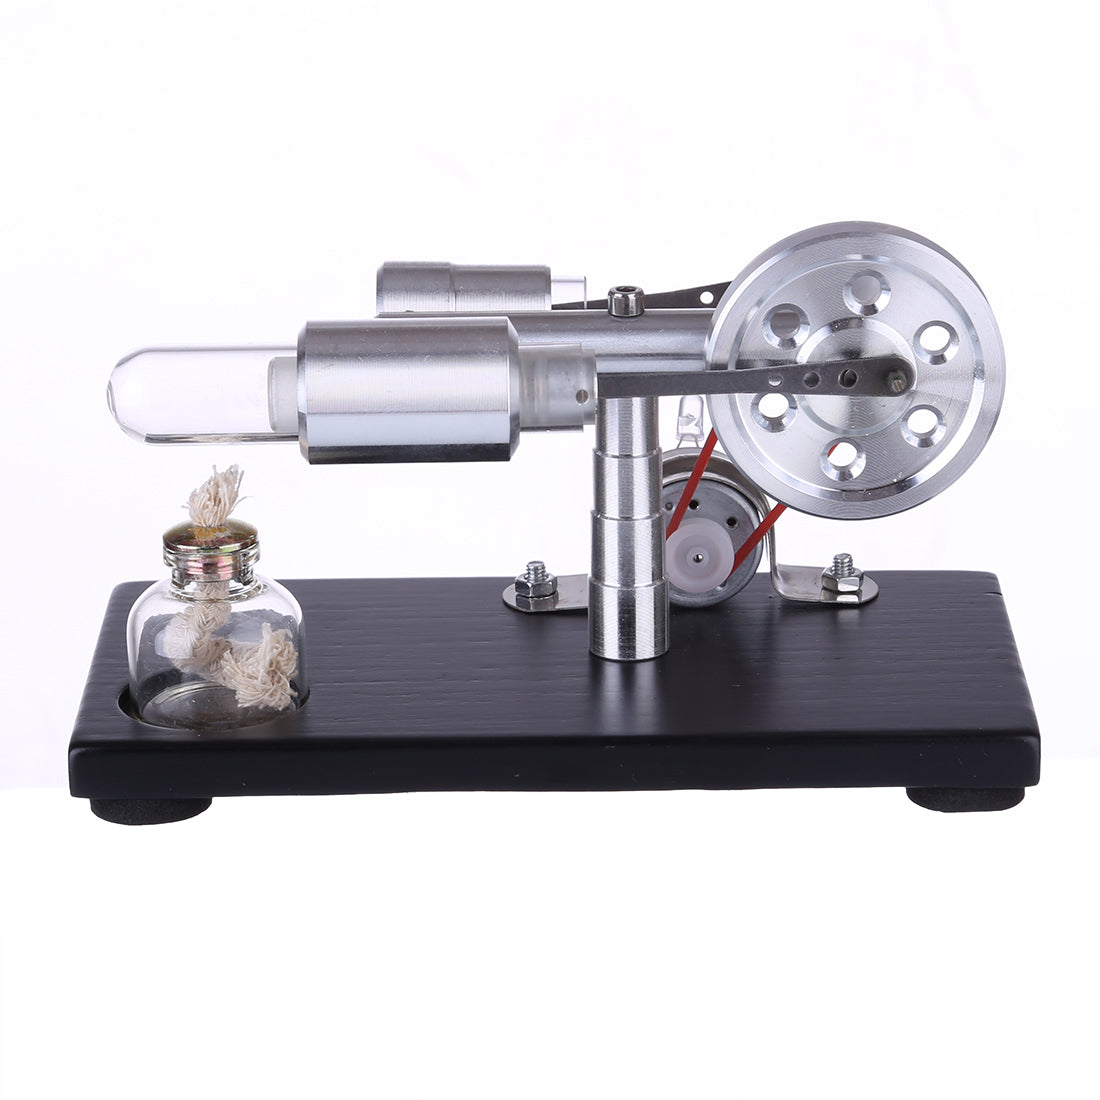 γ-shape Stirling Engine Generator Model with LED Lights Voltage Digital Display Meter Science Educational Model STEM Collection - enginediy